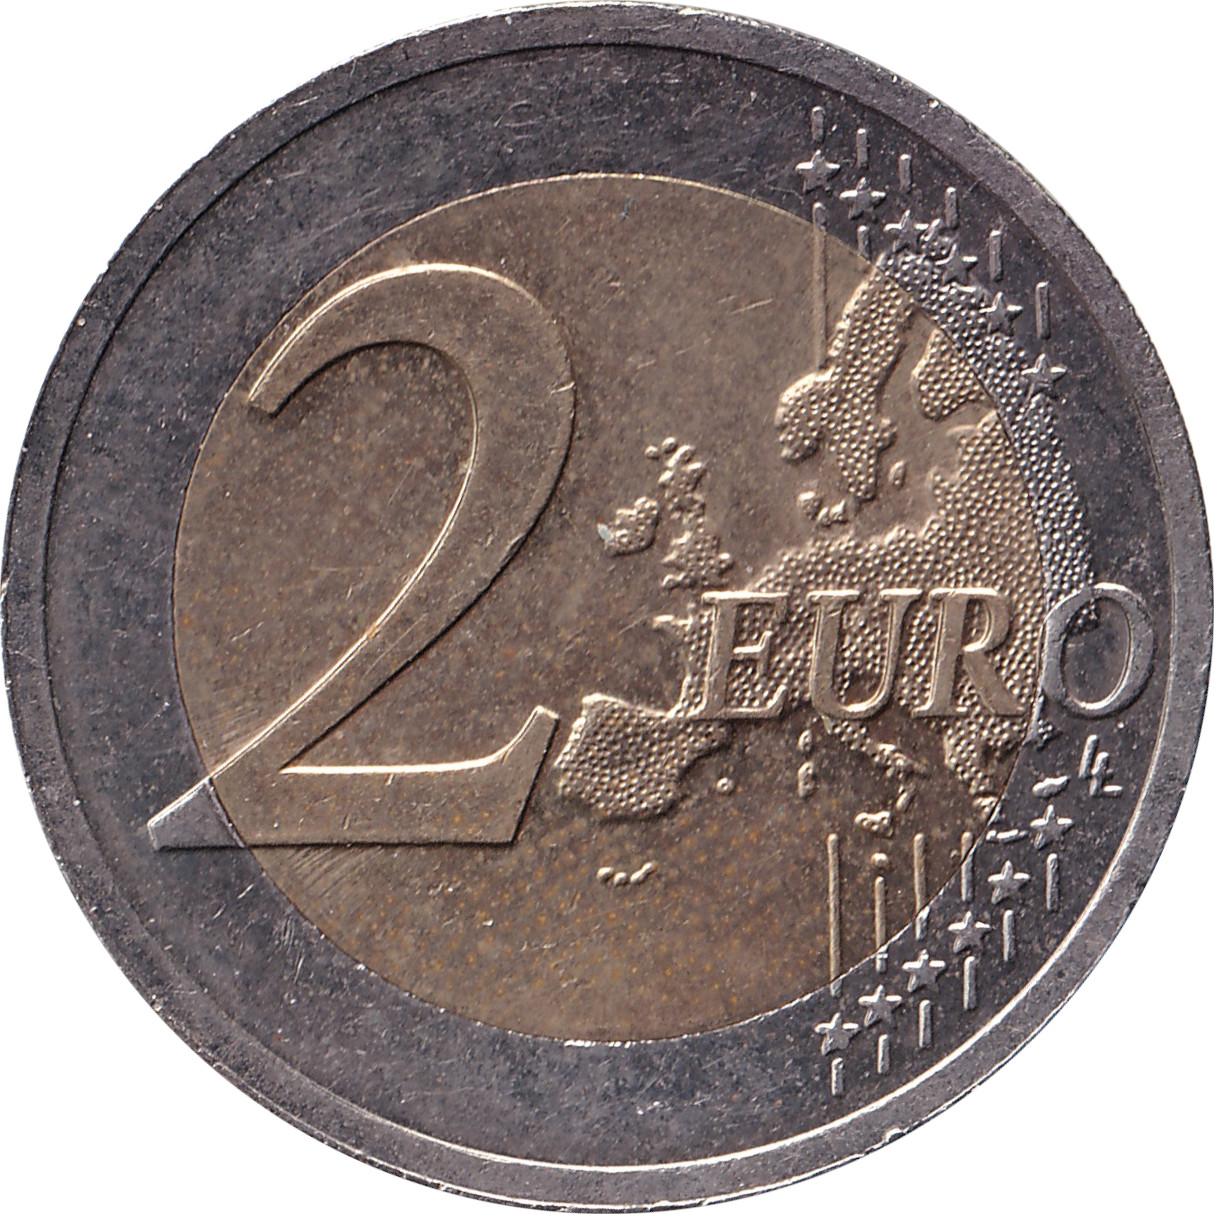 2 euro - Vytis